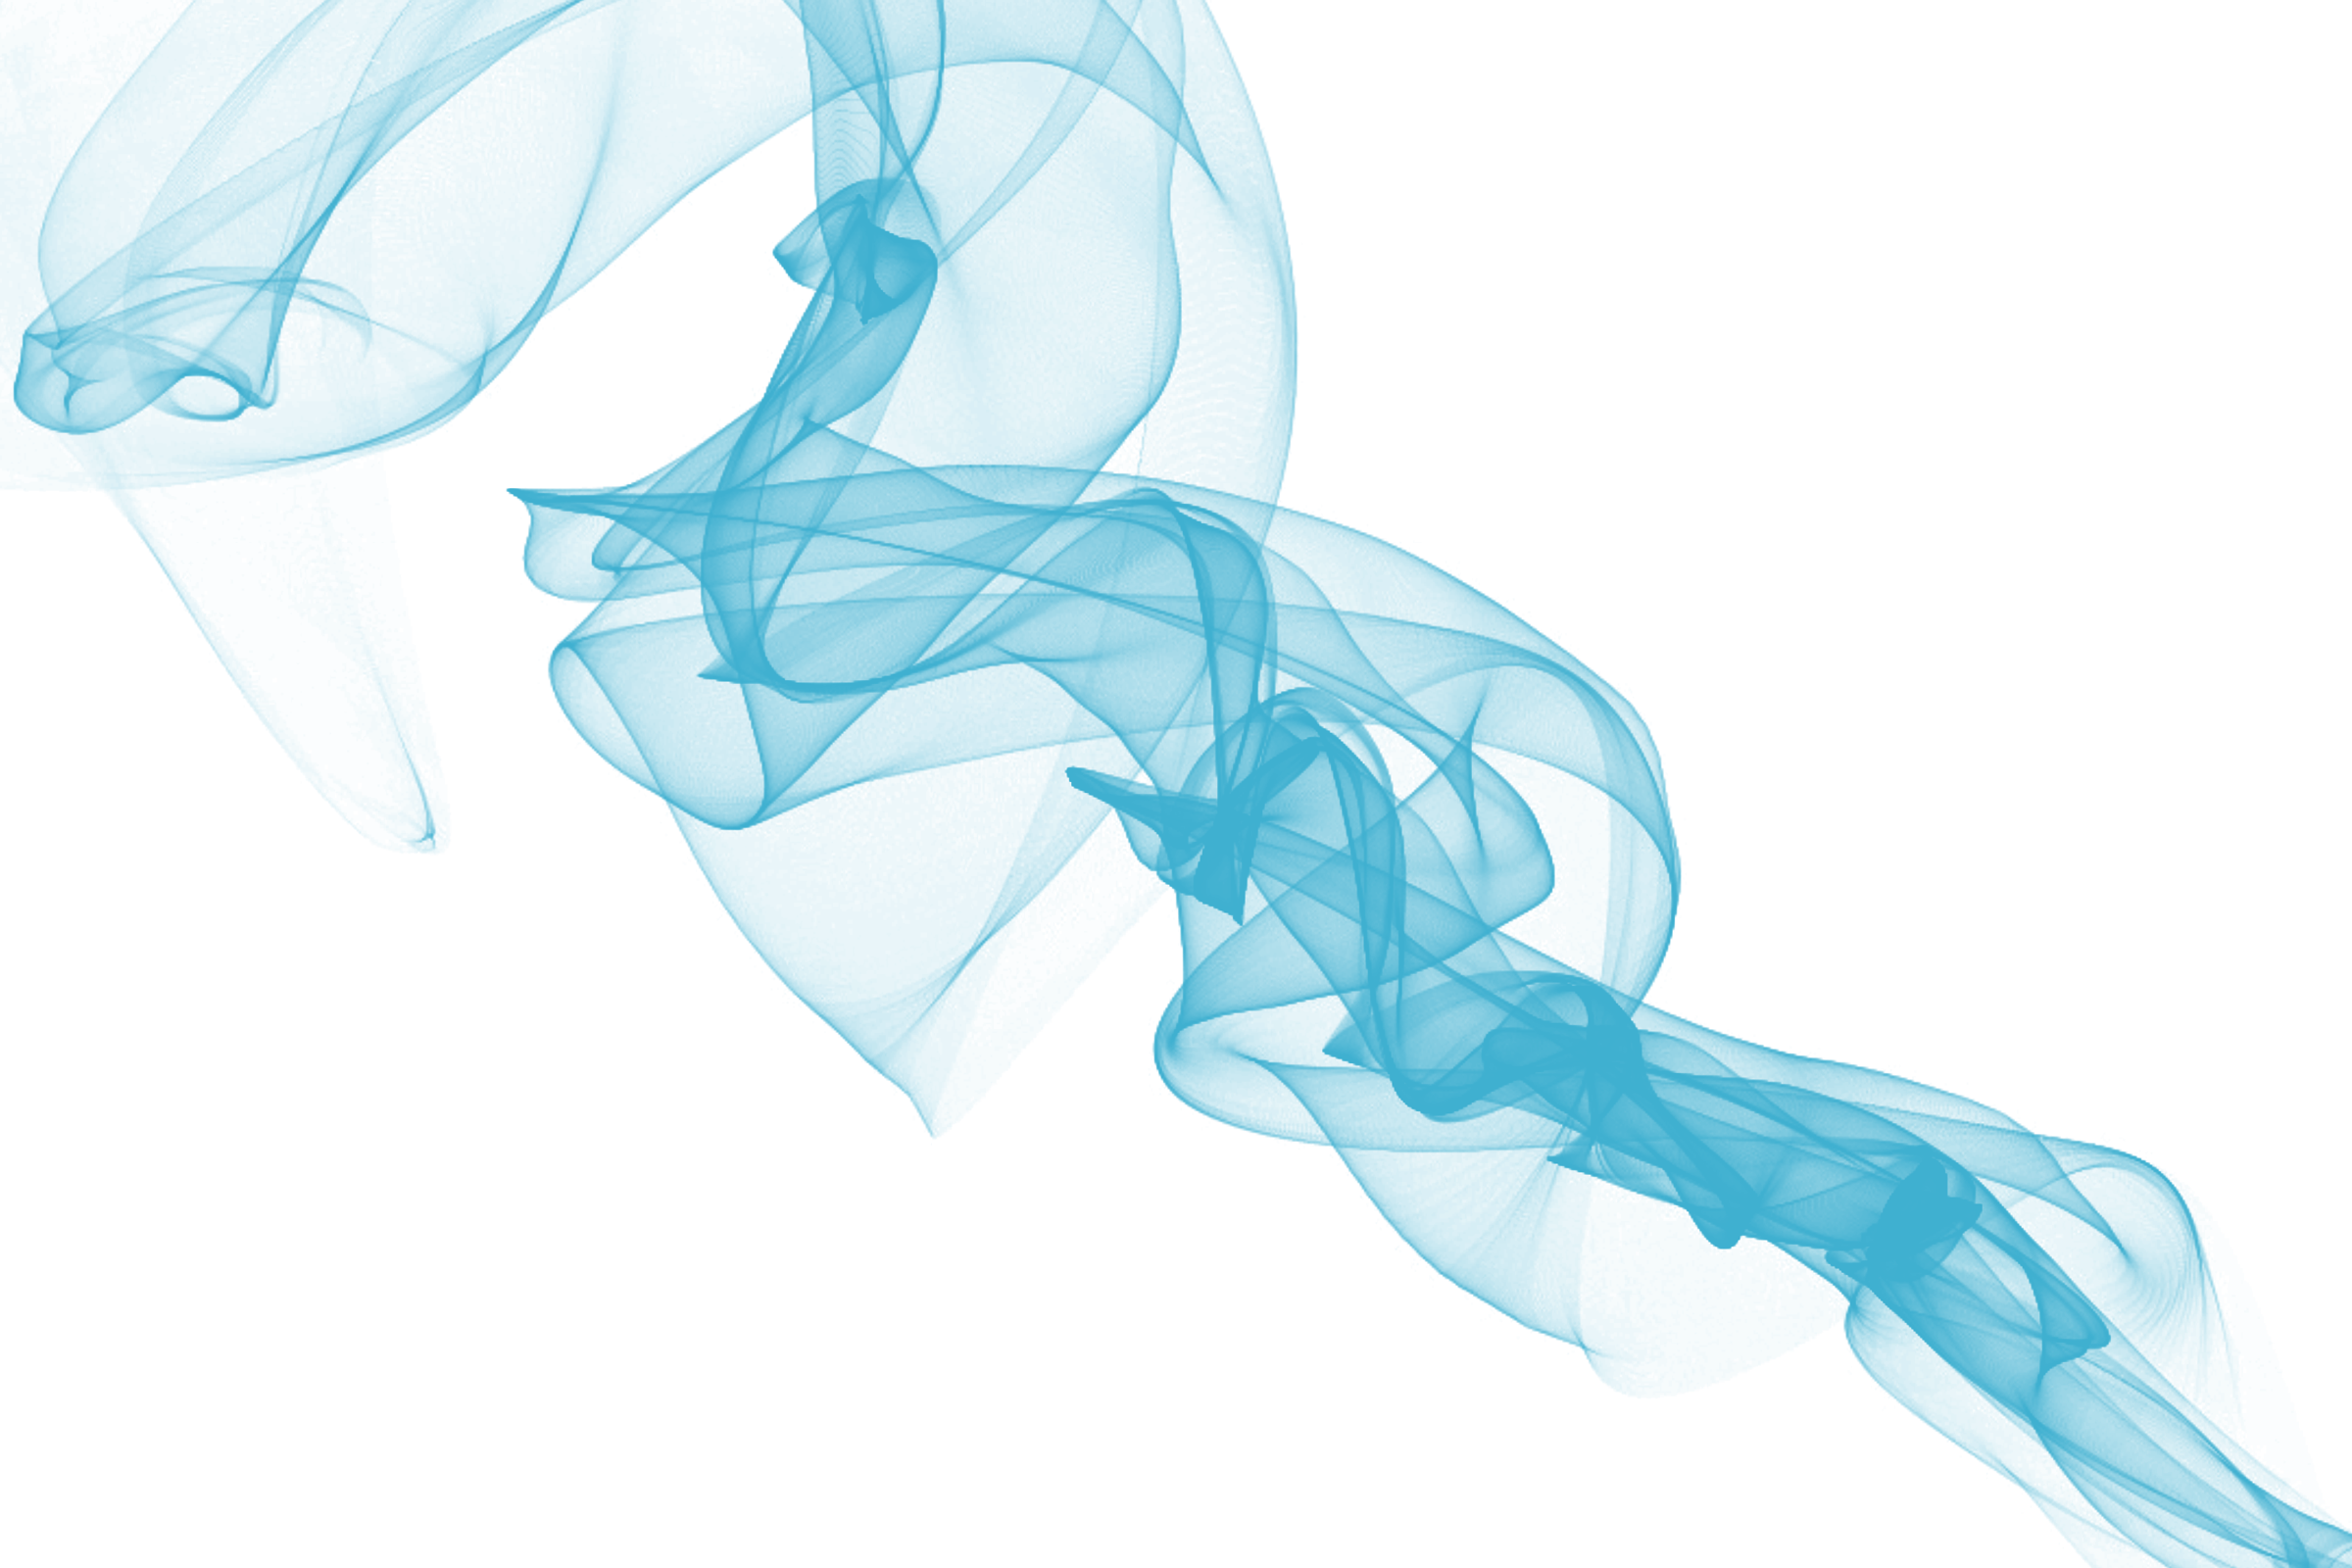 Blauwe rook PNG-Afbeelding met Transparante achtergrond